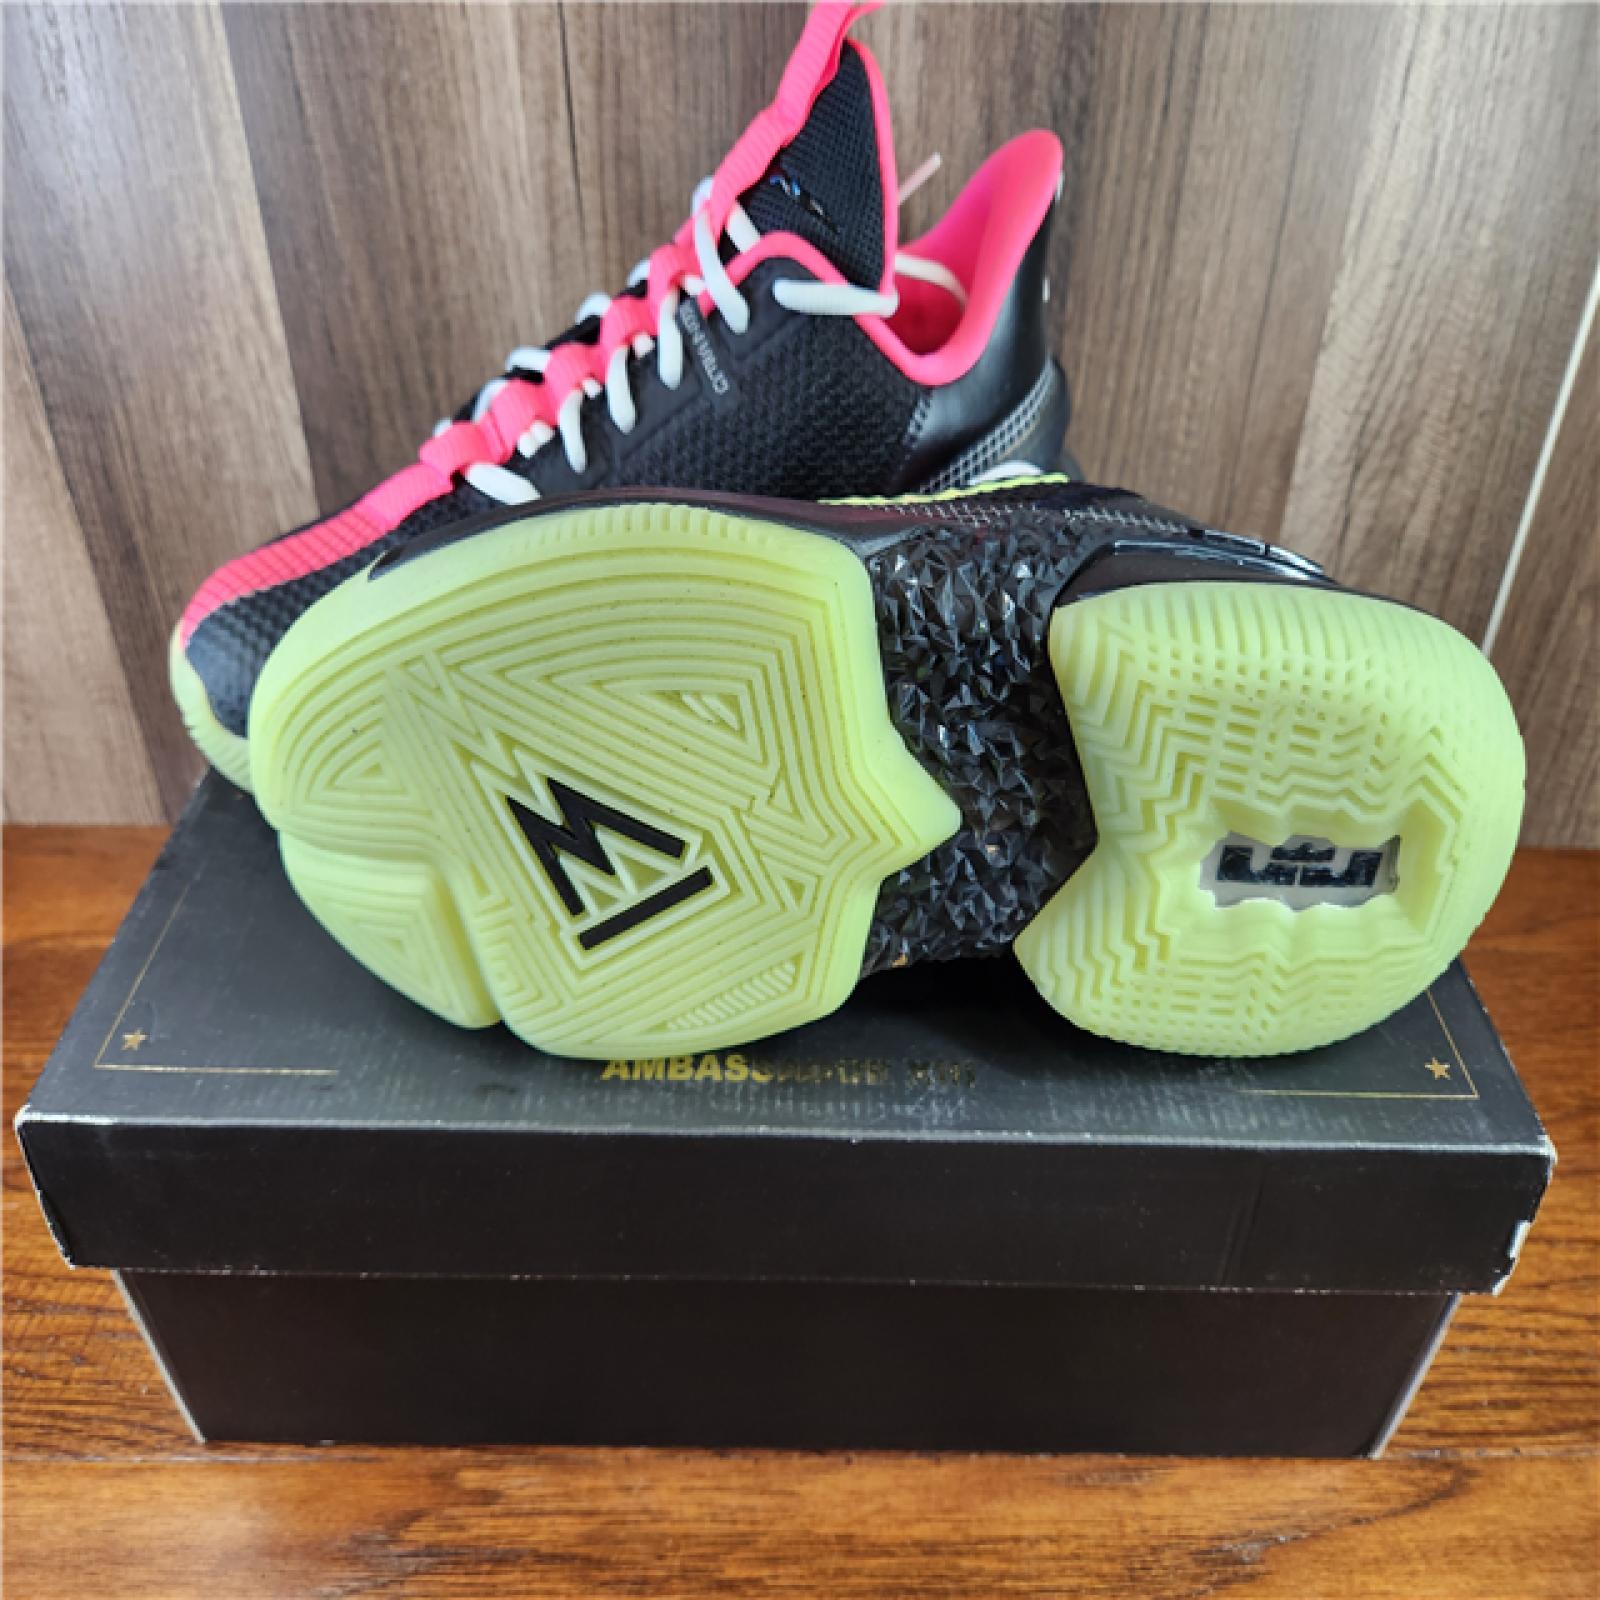 NEW! Nike LeBron Ambassador 13 'Yeezy' - Volt-Hyper Pink - SZ 10.5